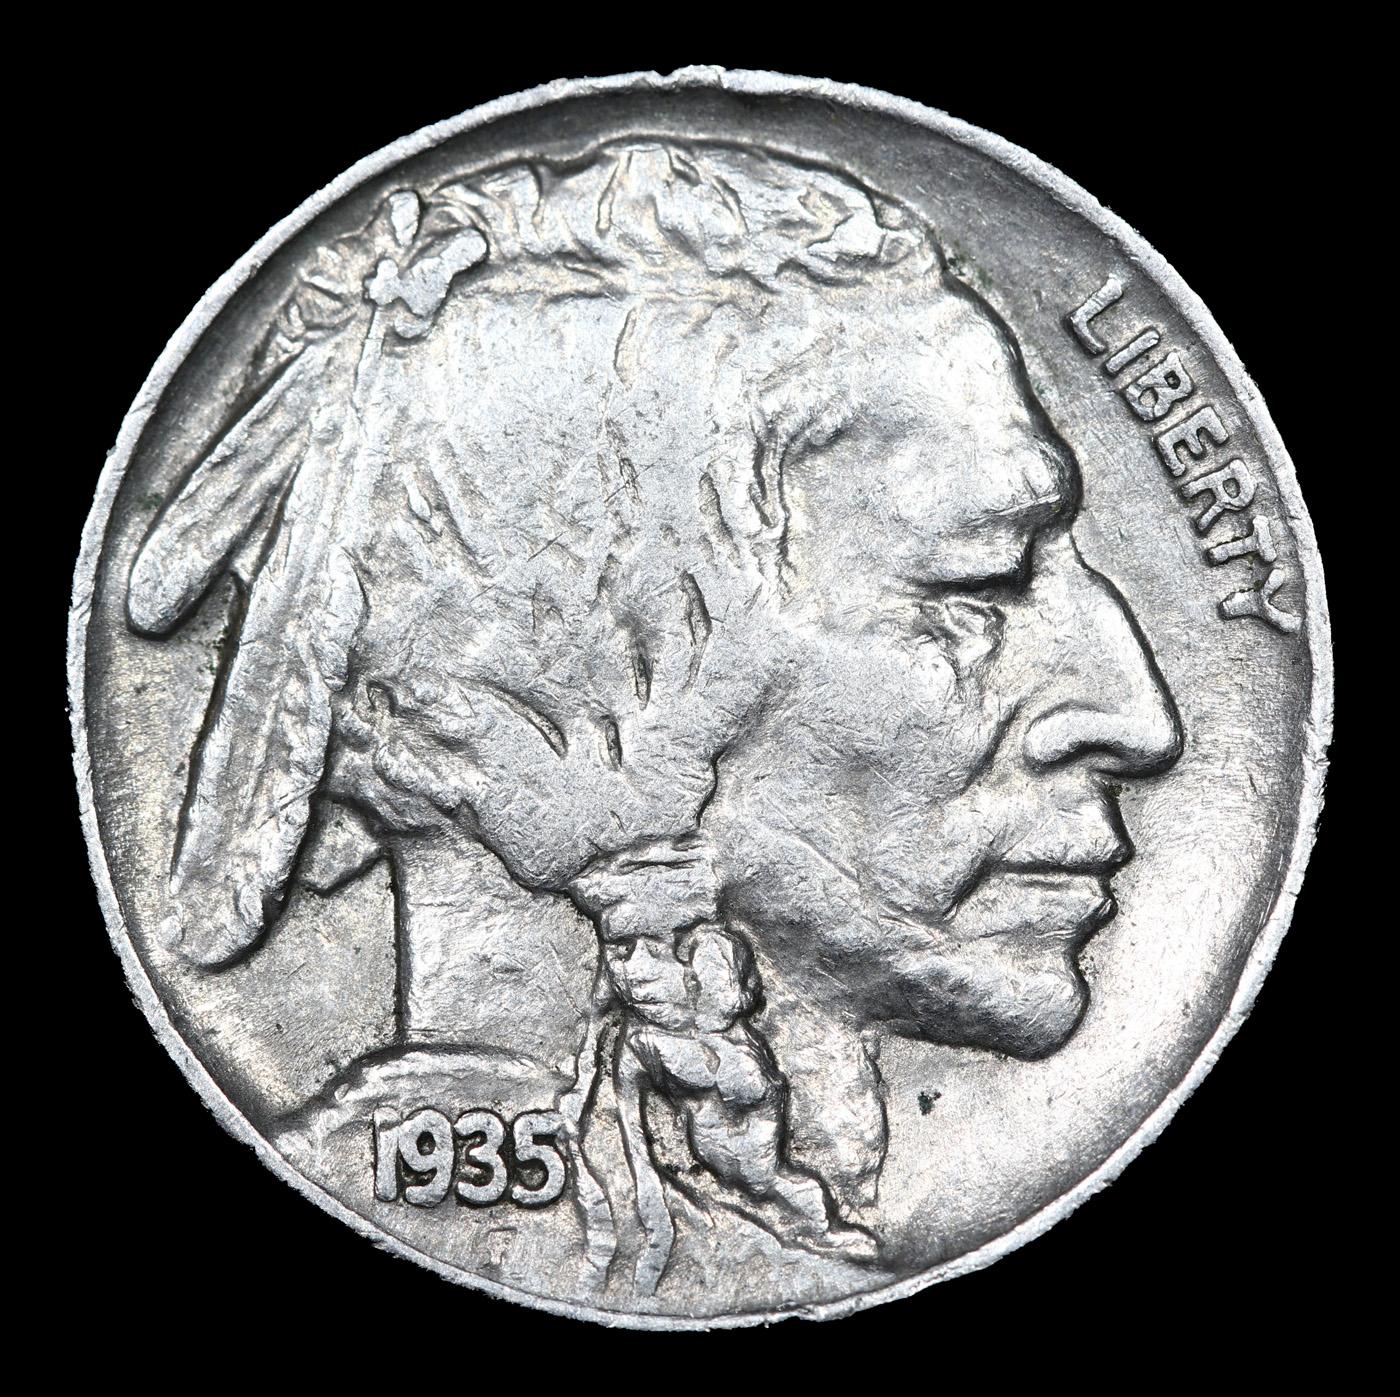 1935-p Buffalo Nickel 5c Grades Select Unc